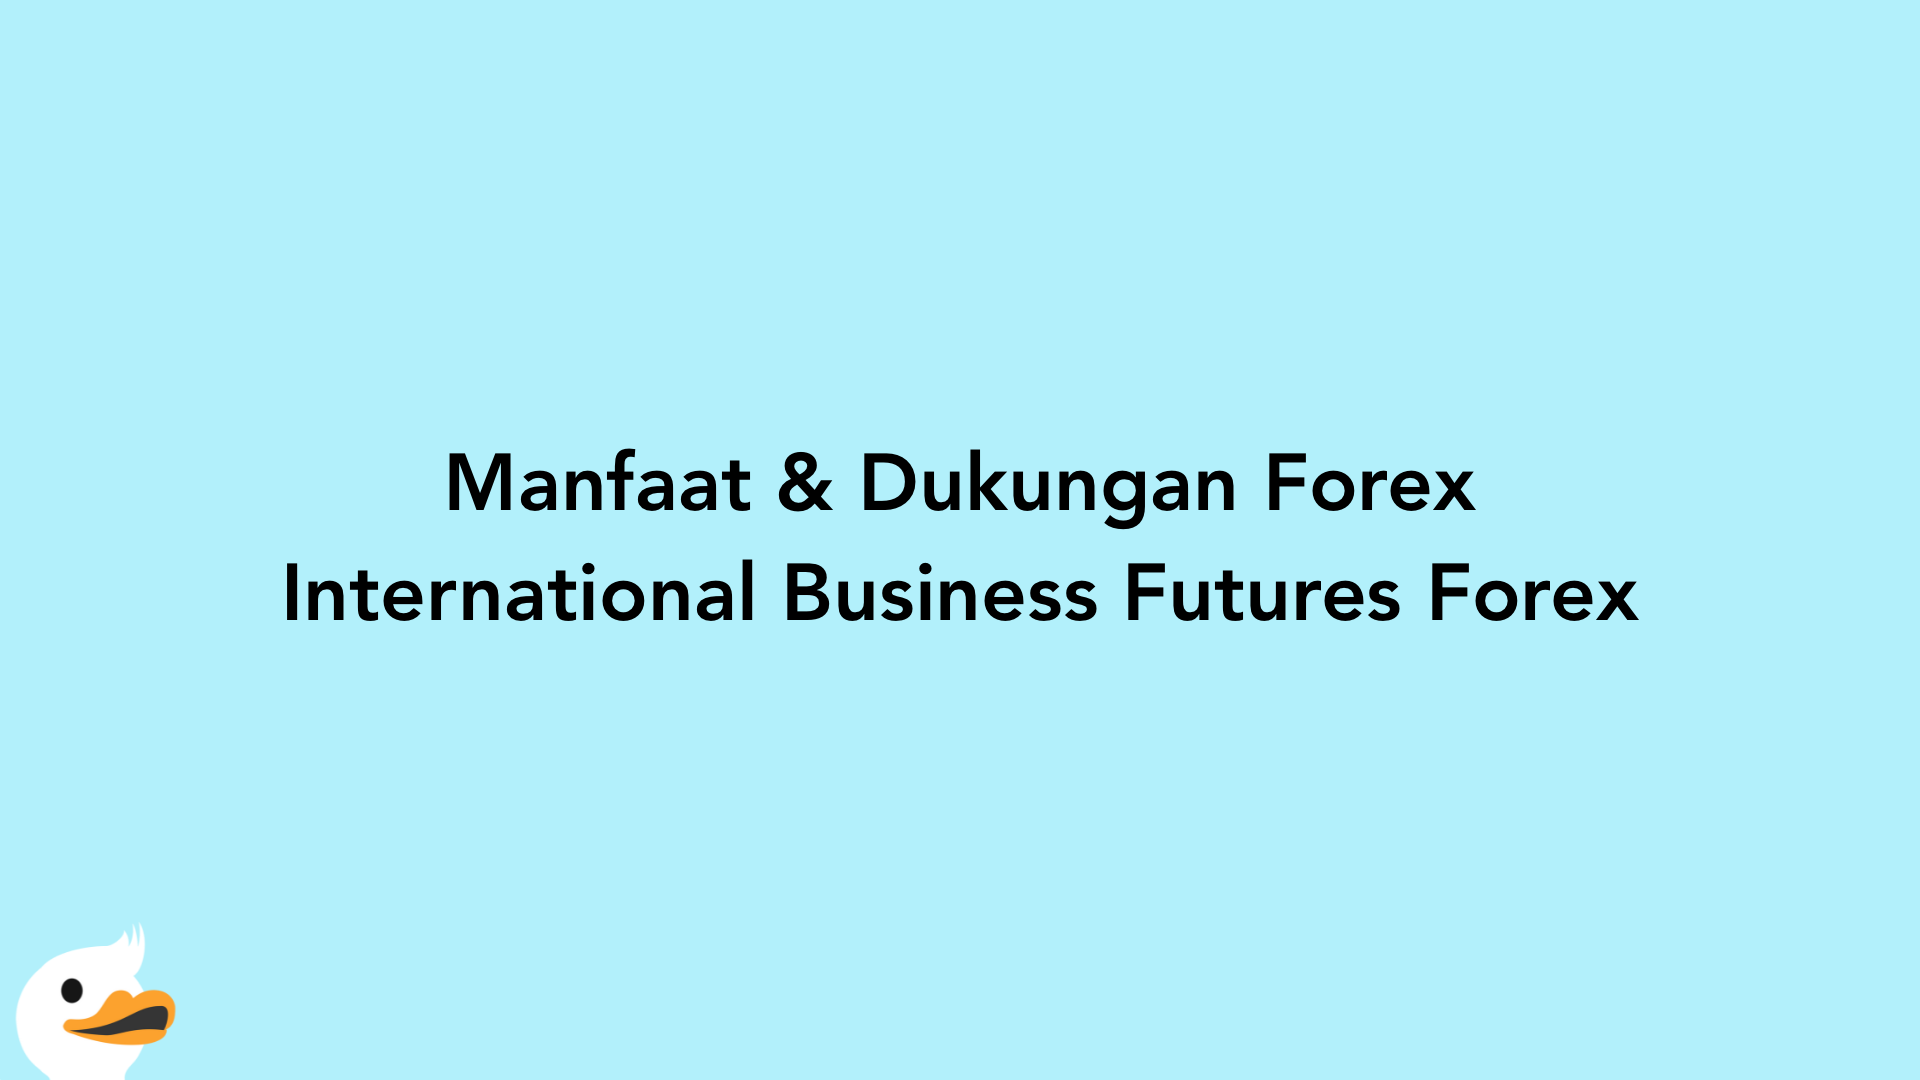 Manfaat & Dukungan Forex International Business Futures Forex